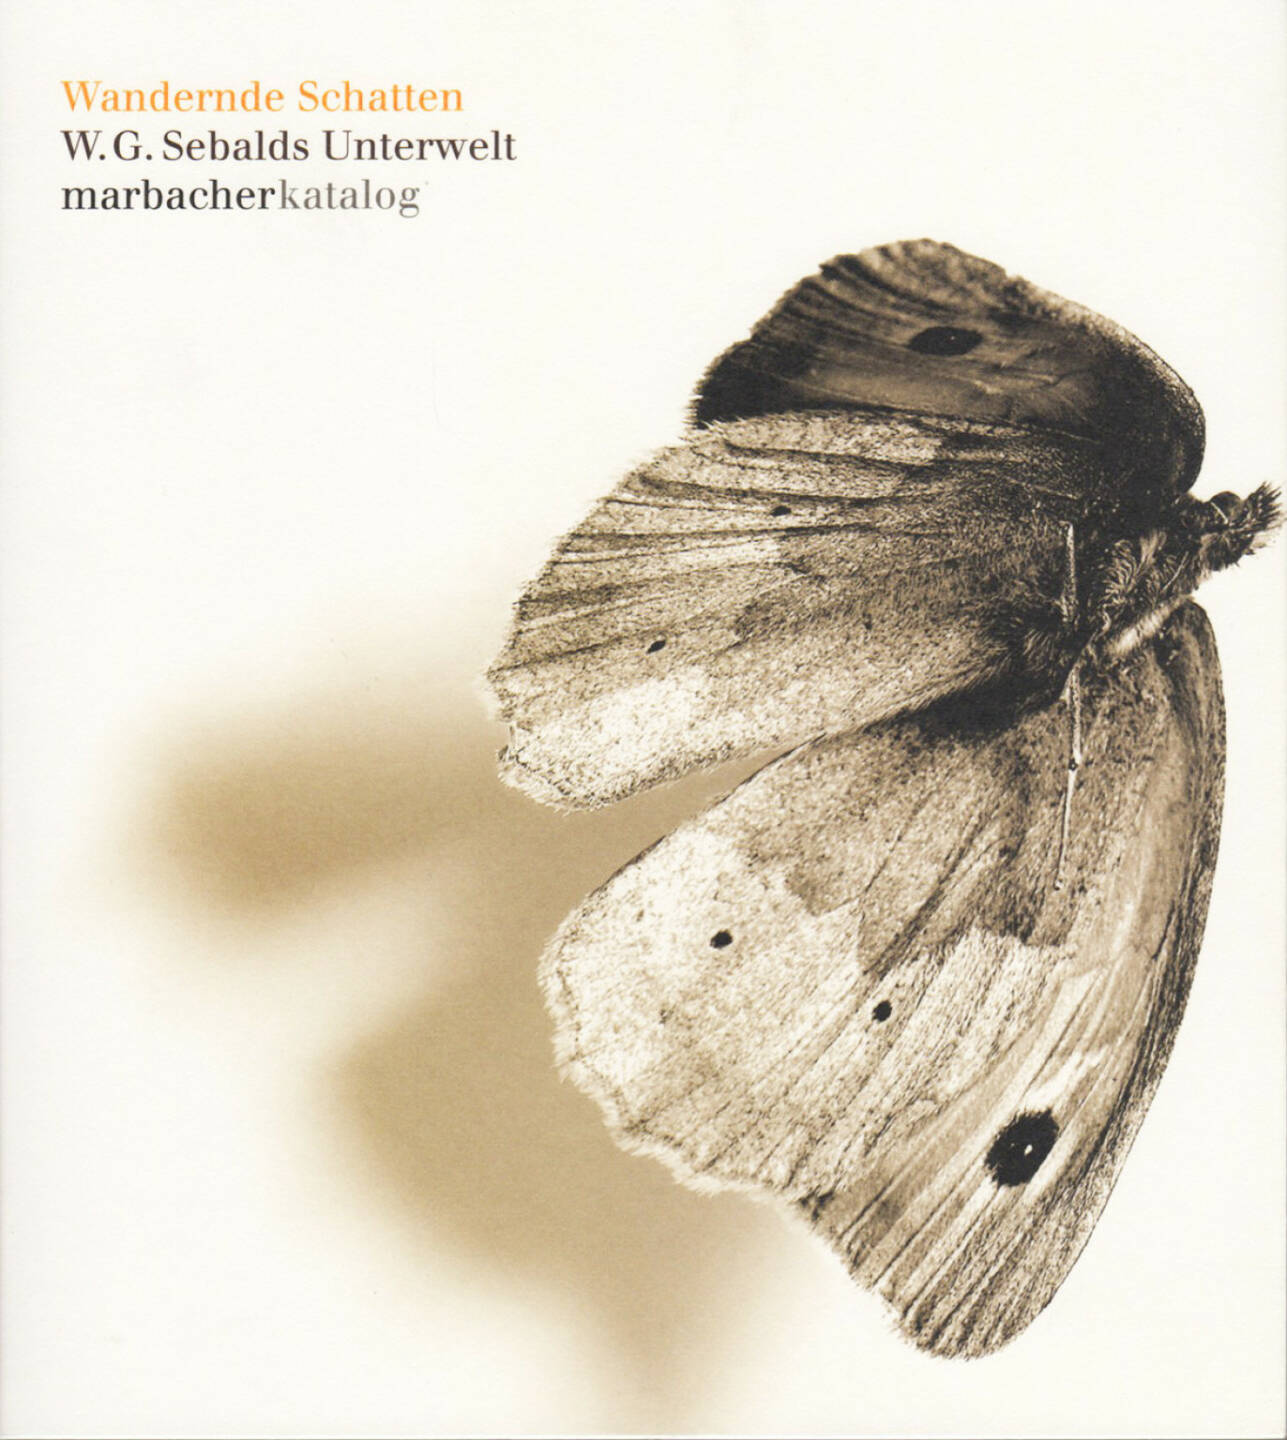 Wandernde Schatten - W. G. Sebalds Unterwelt, Deutsche Schillergesellschaft, 2008, Cover - http://josefchladek.com/book/w_g_sebald_-_wandernde_schatten_-_w_g_sebalds_unterwelt